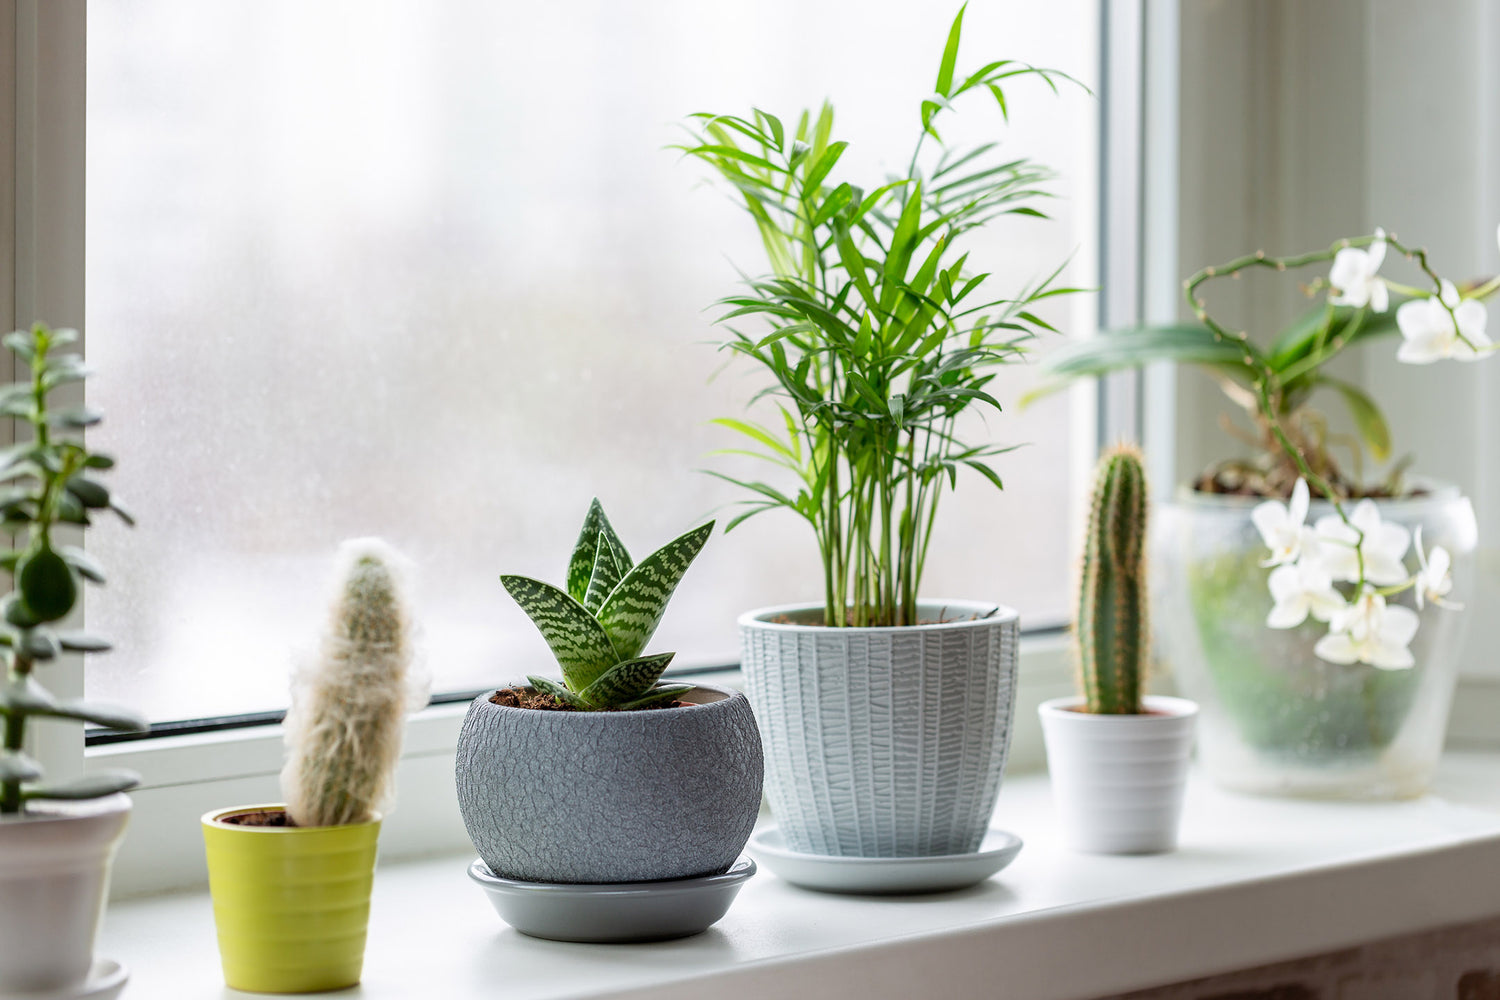 houseplants in ceramic pots on window sill